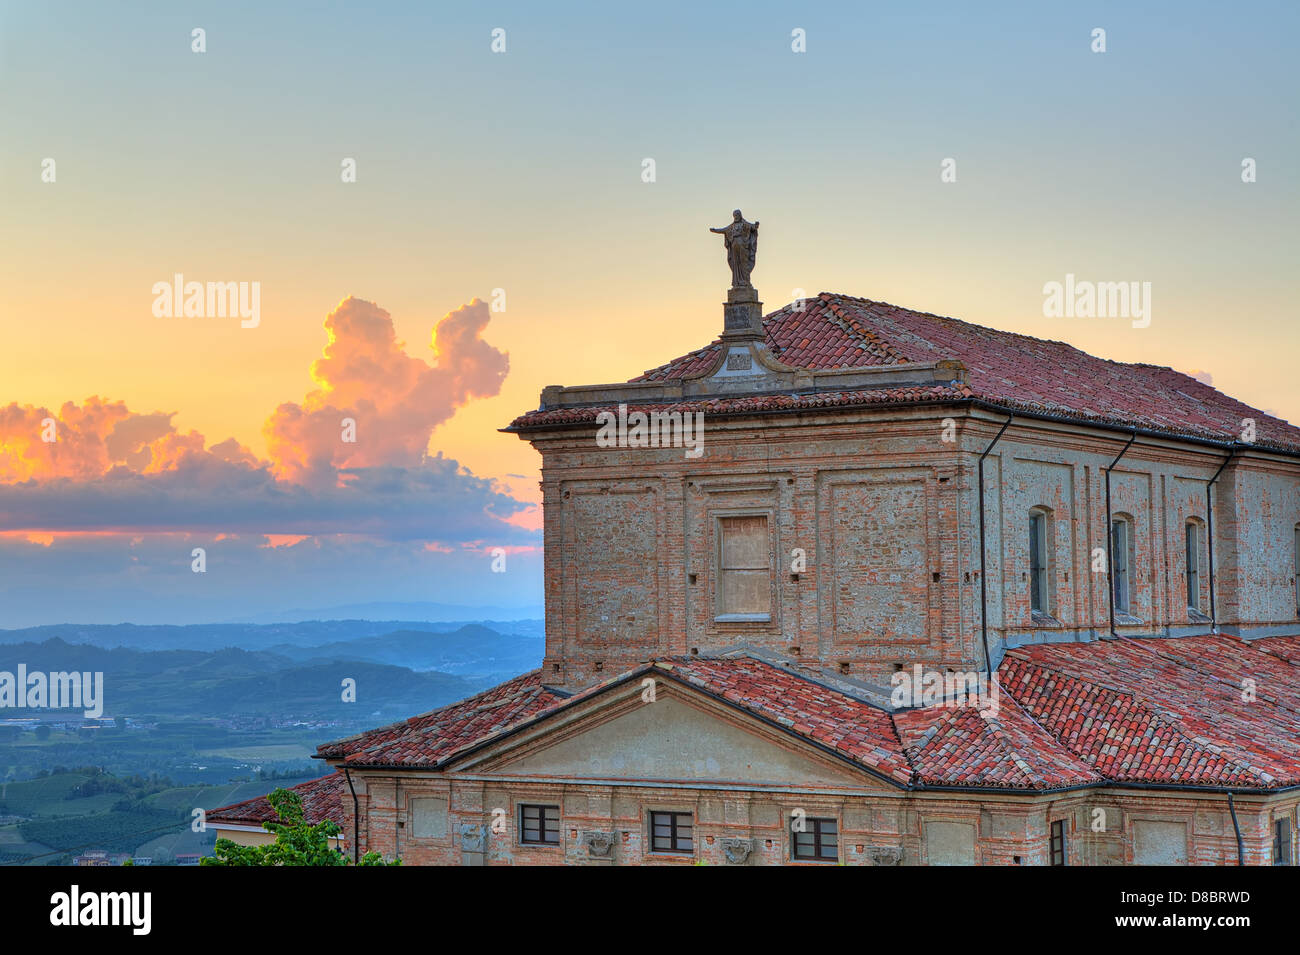 Statua di Gesù Cristo sul tetto della chiesa e le colline delle Langhe su sfondo al tramonto sotto il bellissimo cielo di sera in Italia. Foto Stock